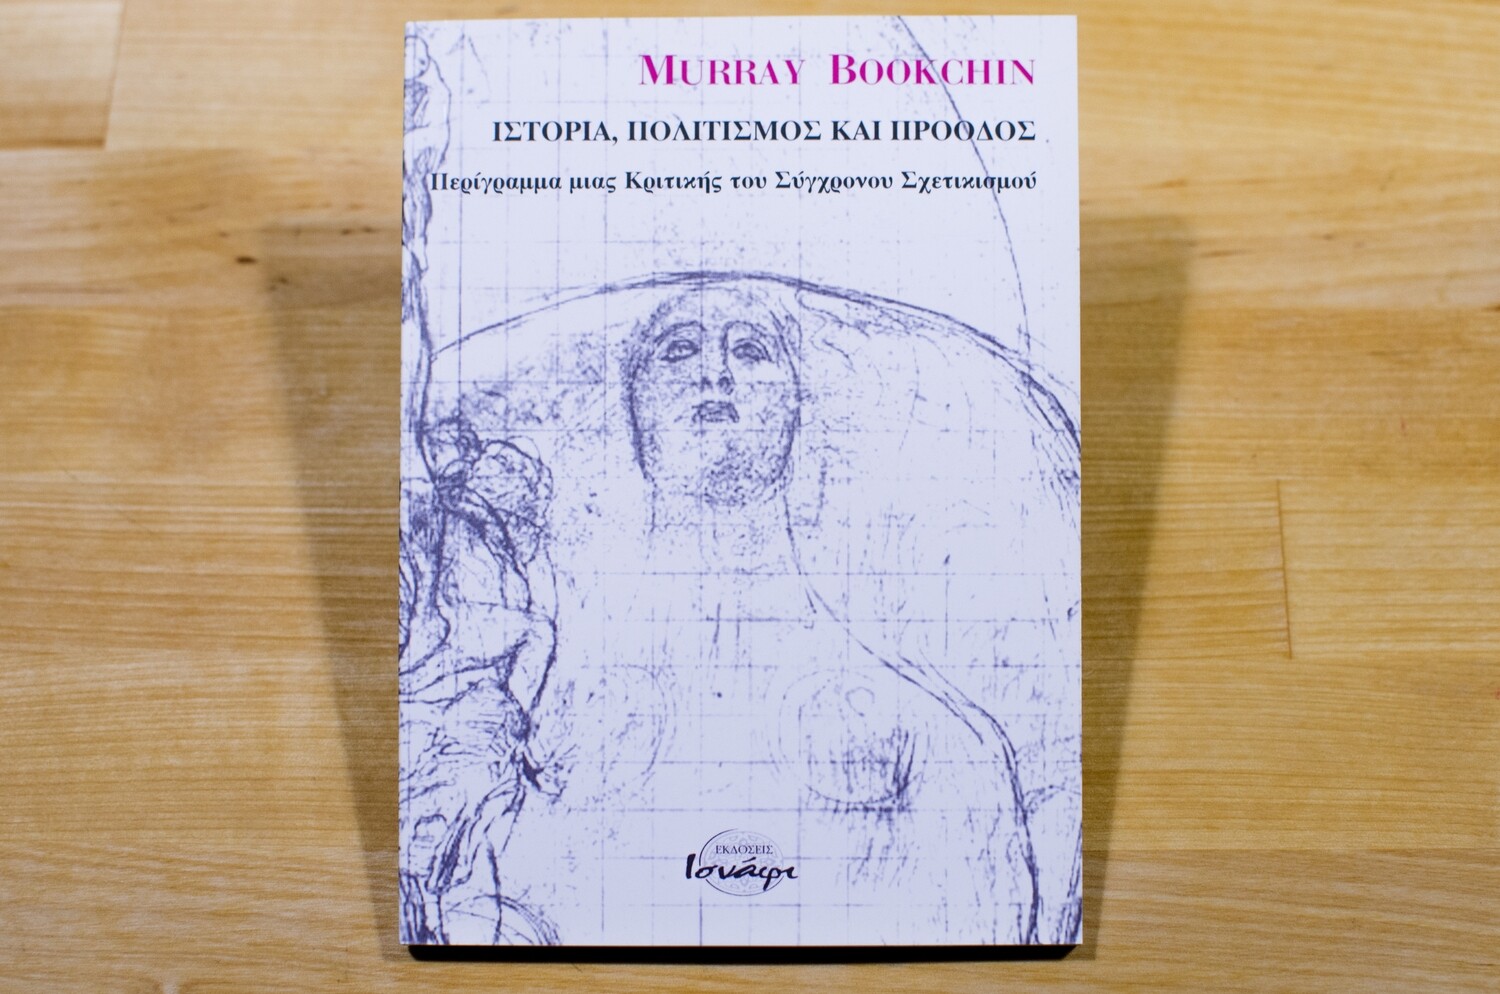 Ιστορία, πολιτισμός και πρόοδος, Περίγραμμα μιας κριτικής του σύγχρονου σχετικισμού, Murray Bookchin, Εκδόσεις Ισνάφι, 2005